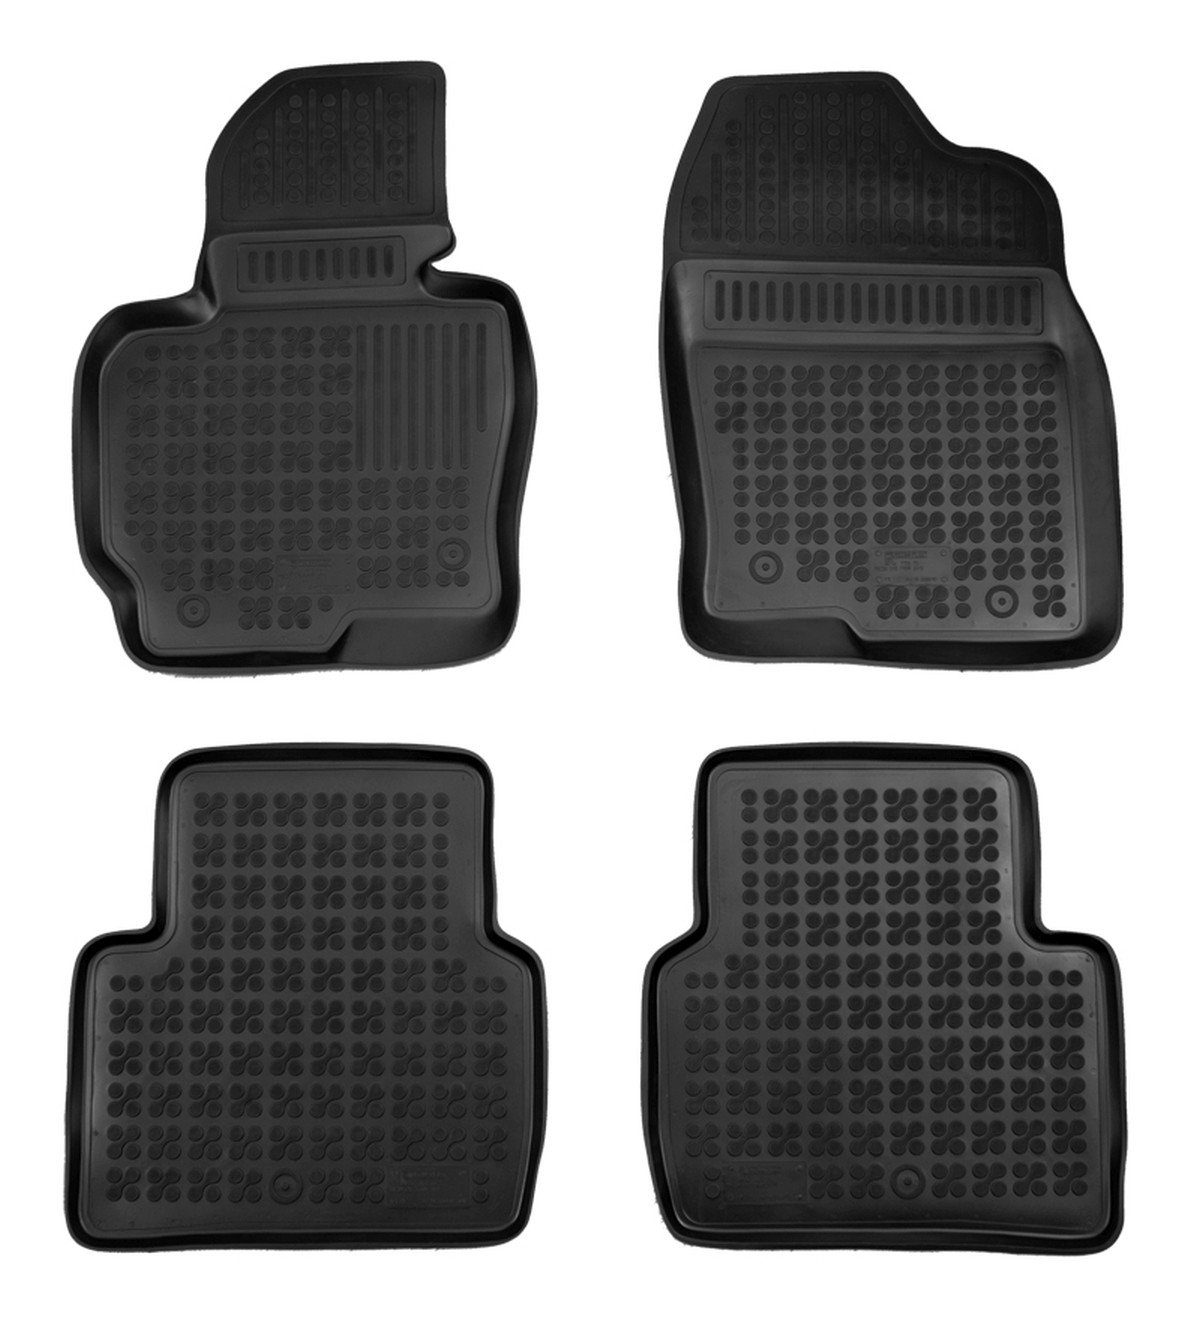 AZUGA Auto-Fußmatten Hohe Gummi-Fußmatten passend für Mazda CX-5 ab 2012 4-tlg., für Mazda CX-5 SUV